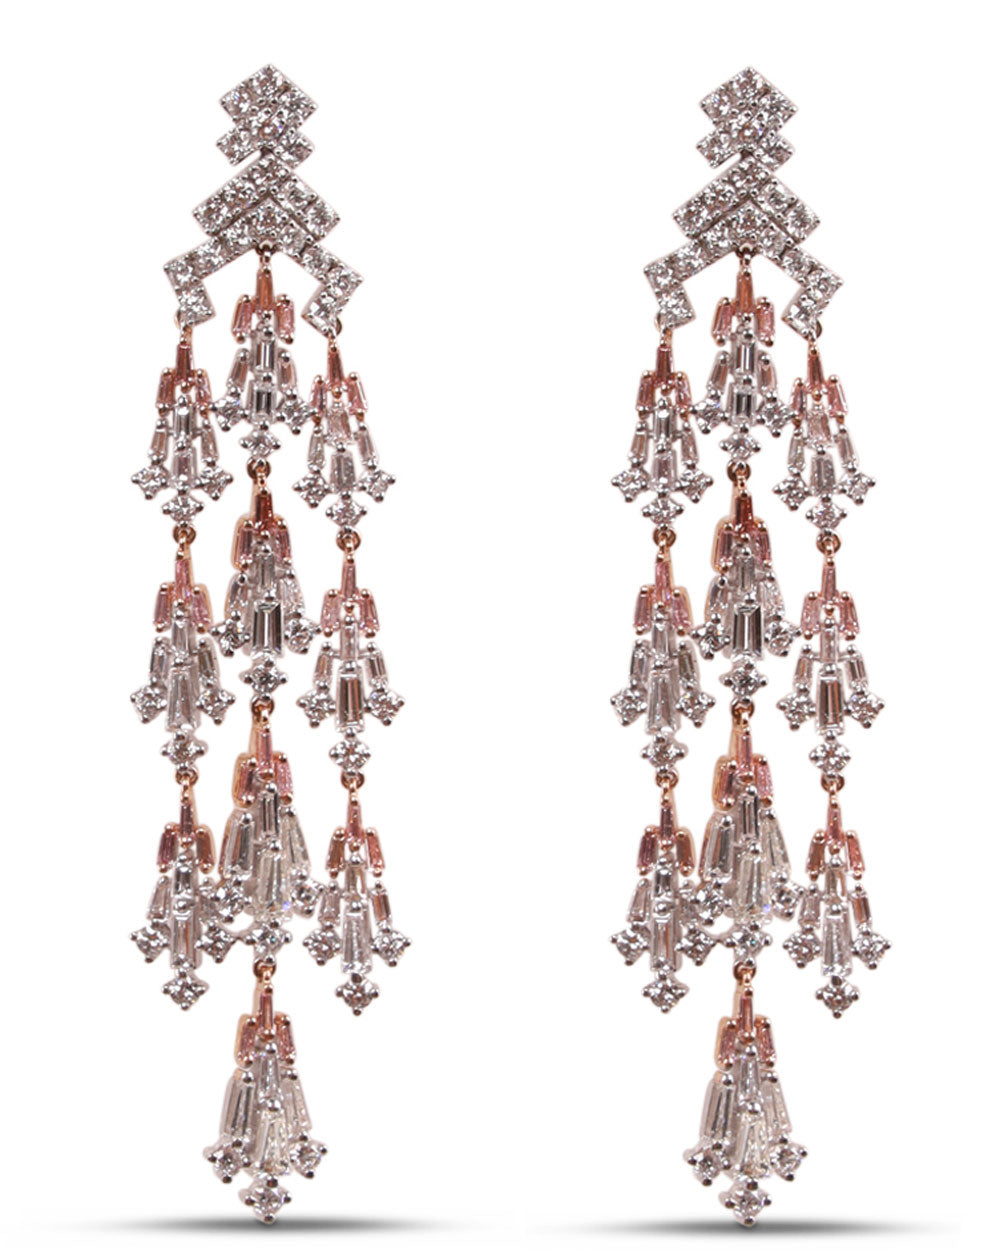 Fancy Pink and White Diamond Chandelier Earrings